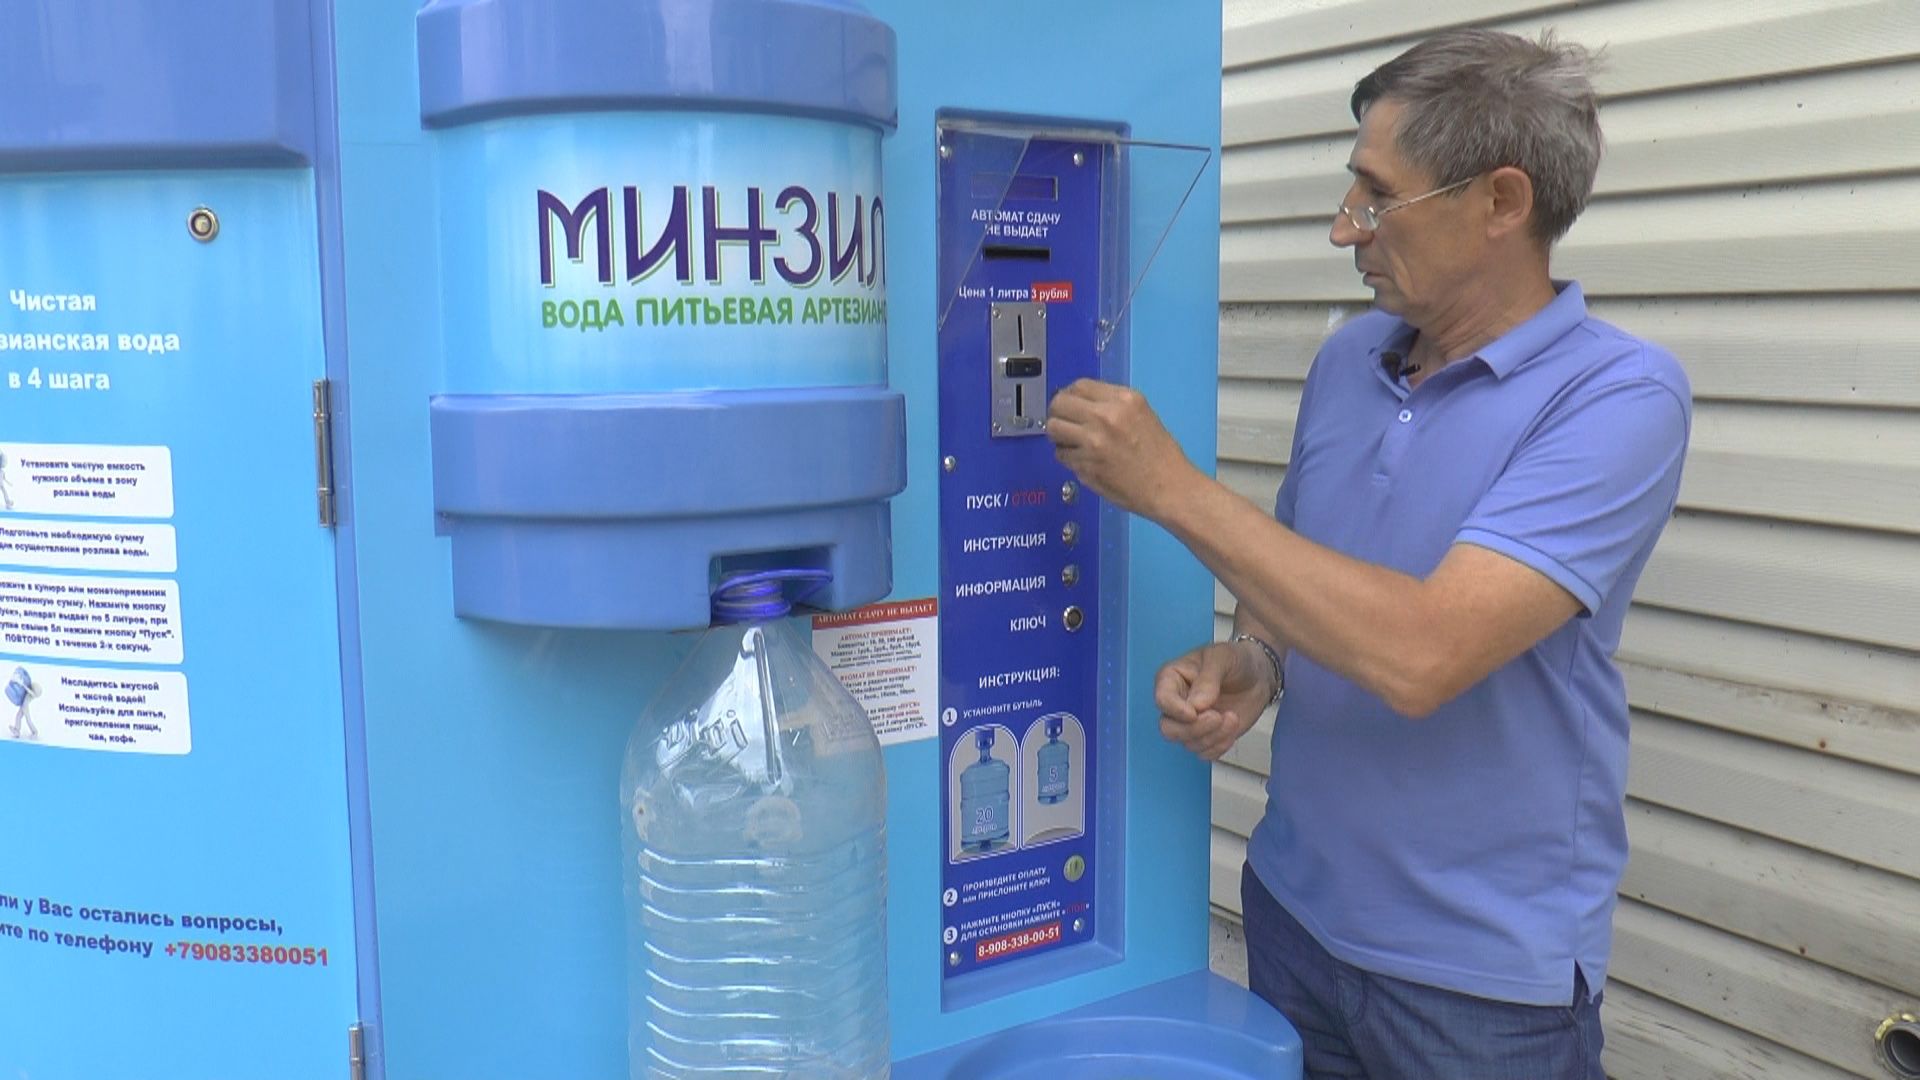 Реализованная вода. Артезианская вода автоматы. Автомат по продаже воды. Вода на разлив. Питьевая вода из аппарата.